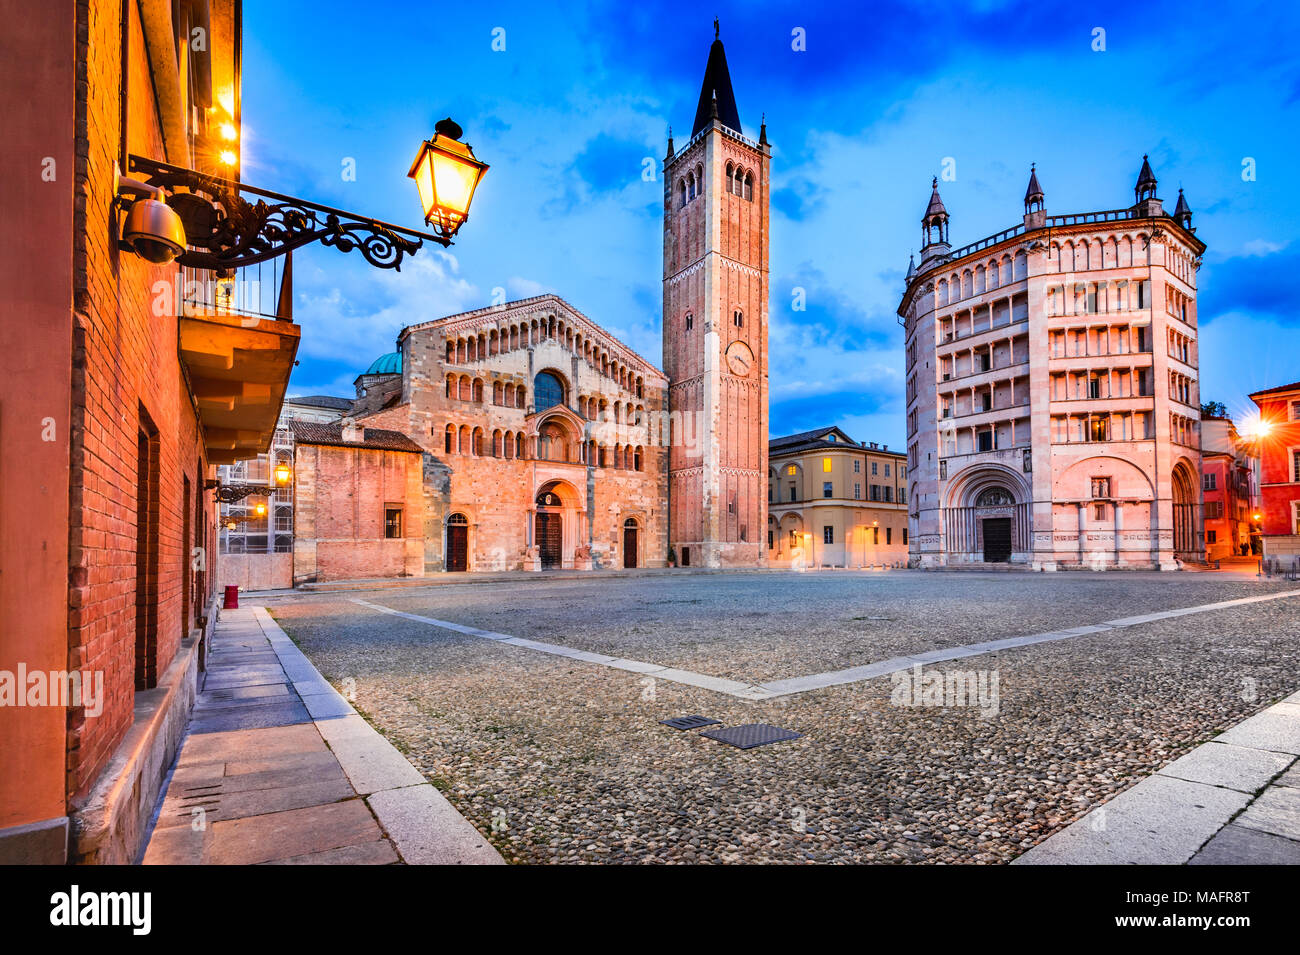 Parma, Italia - Piazza del Duomo con la Catedral y el Baptisterio, construido en 1059. Arquitectura románica en Emilia-Romagna. Foto de stock